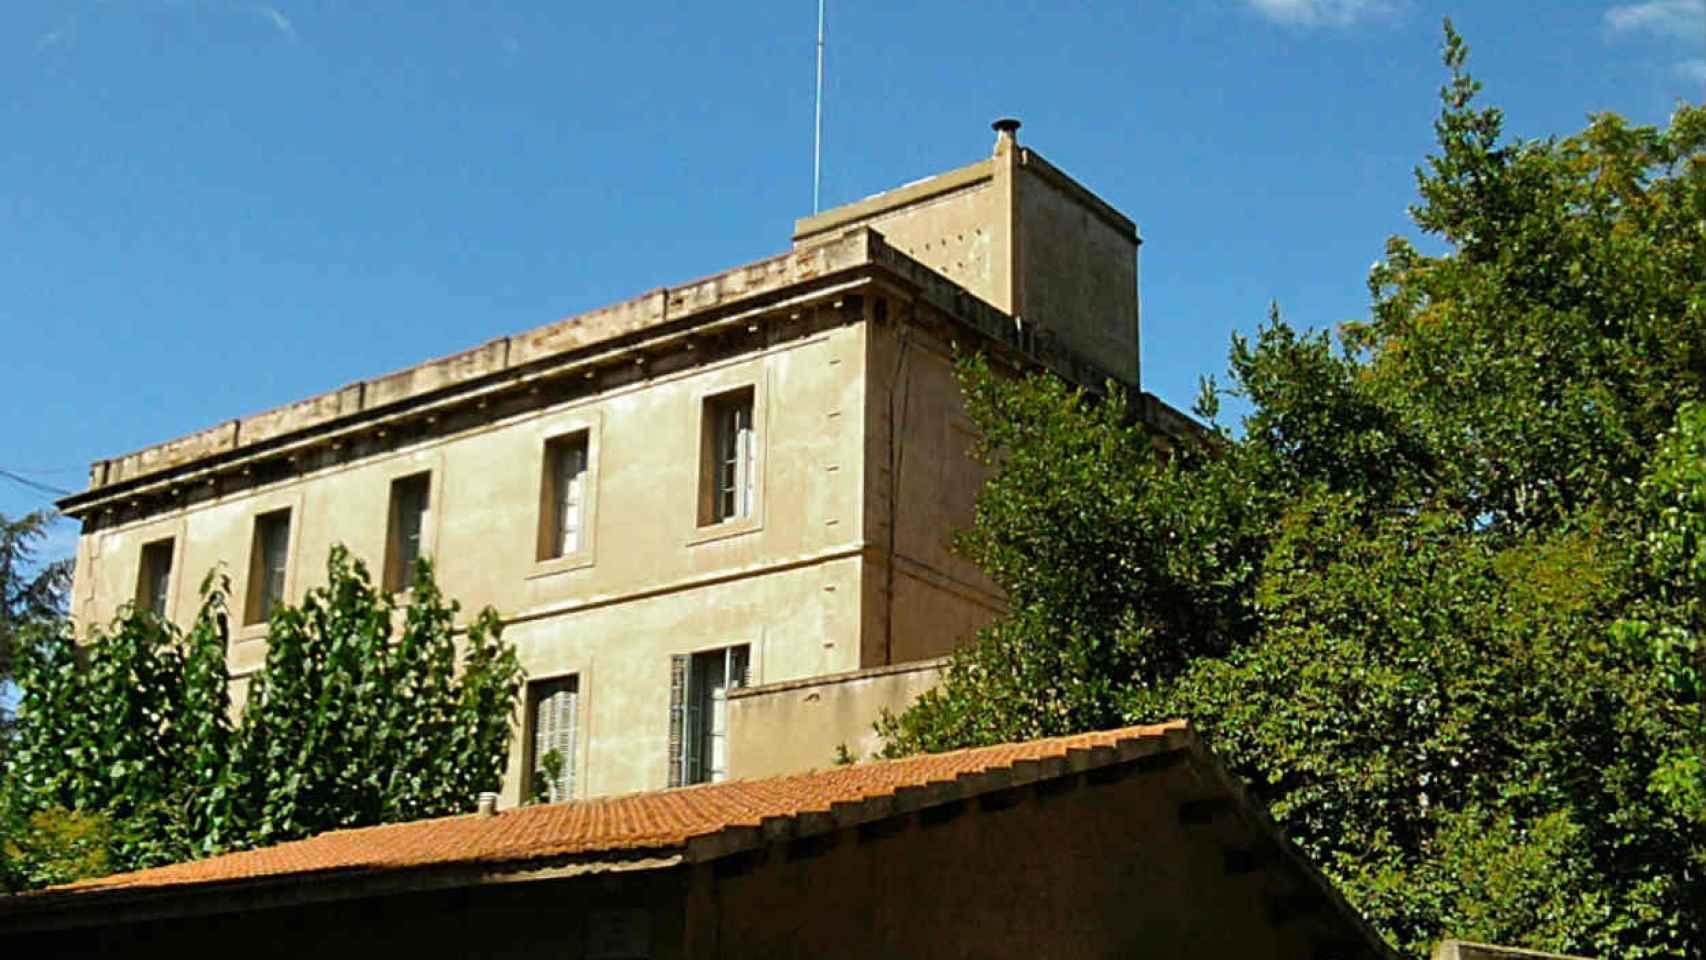 El histórico edificio pertenece al arzobispado de Barcelona / Wikimedia